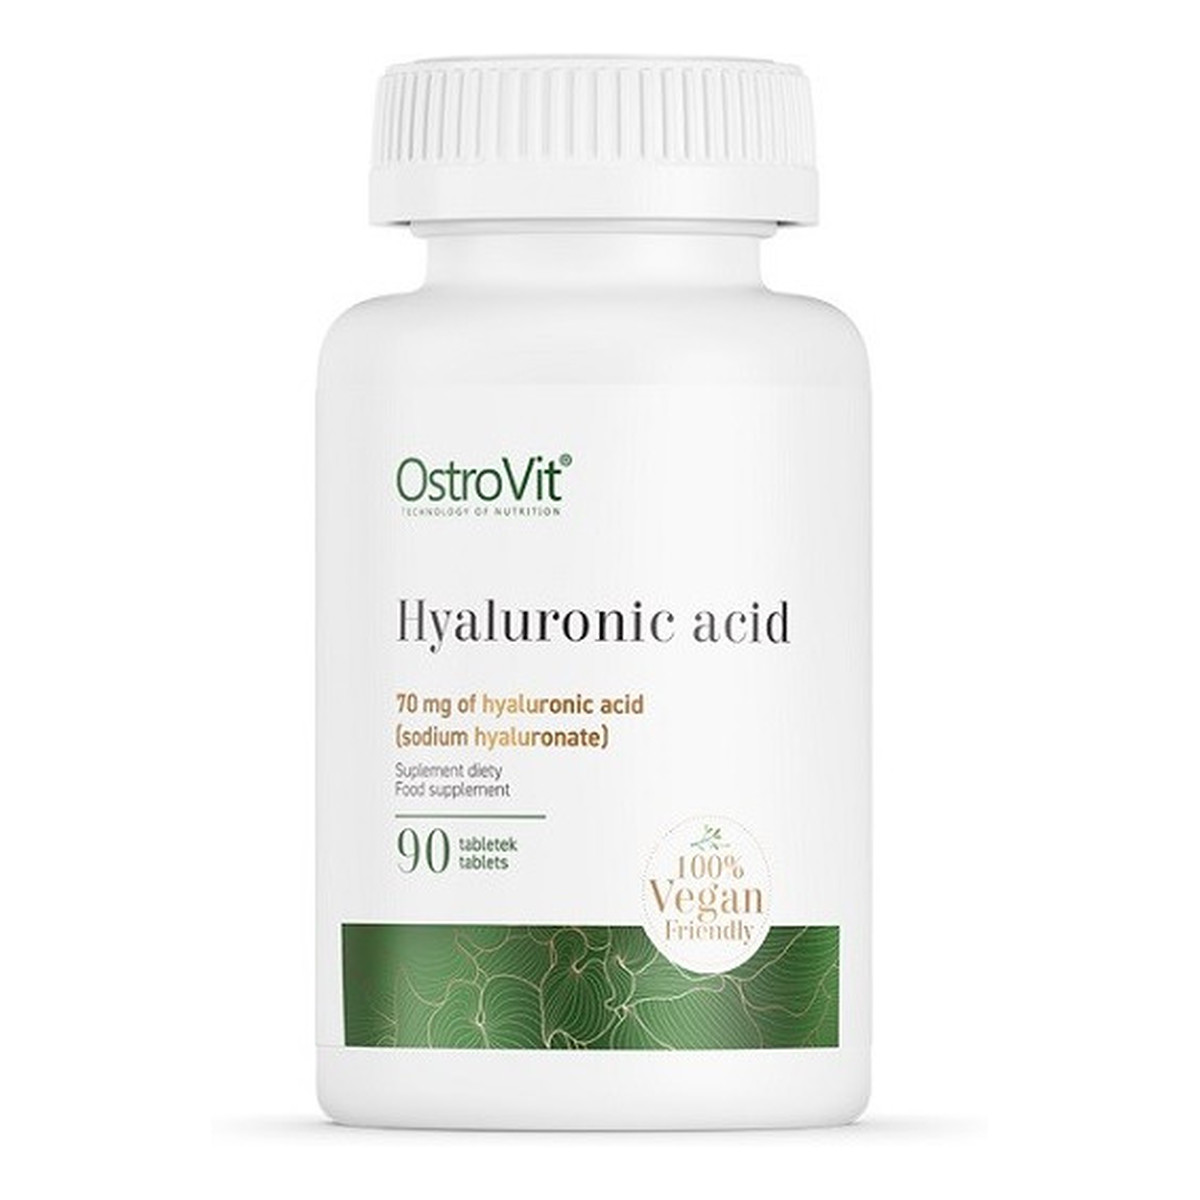 OstroVit HYALURONIC ACID Kwas Hialuronowy 70mg 90 tabletek